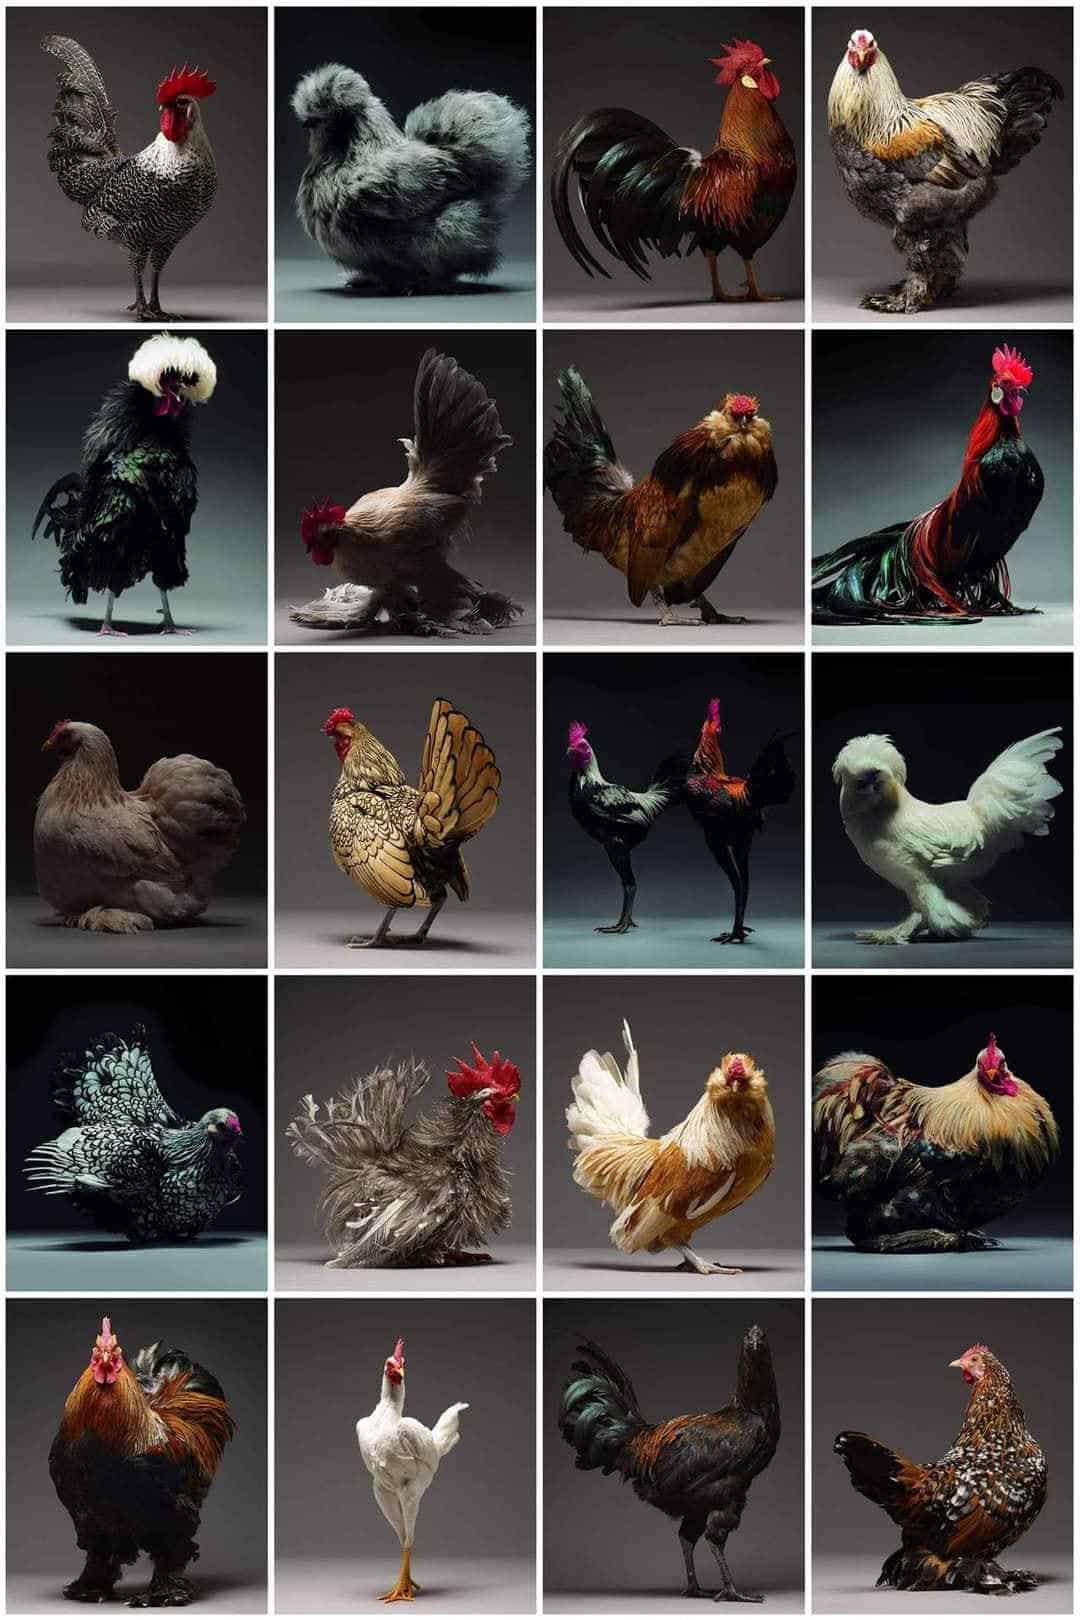 show chicken breeds